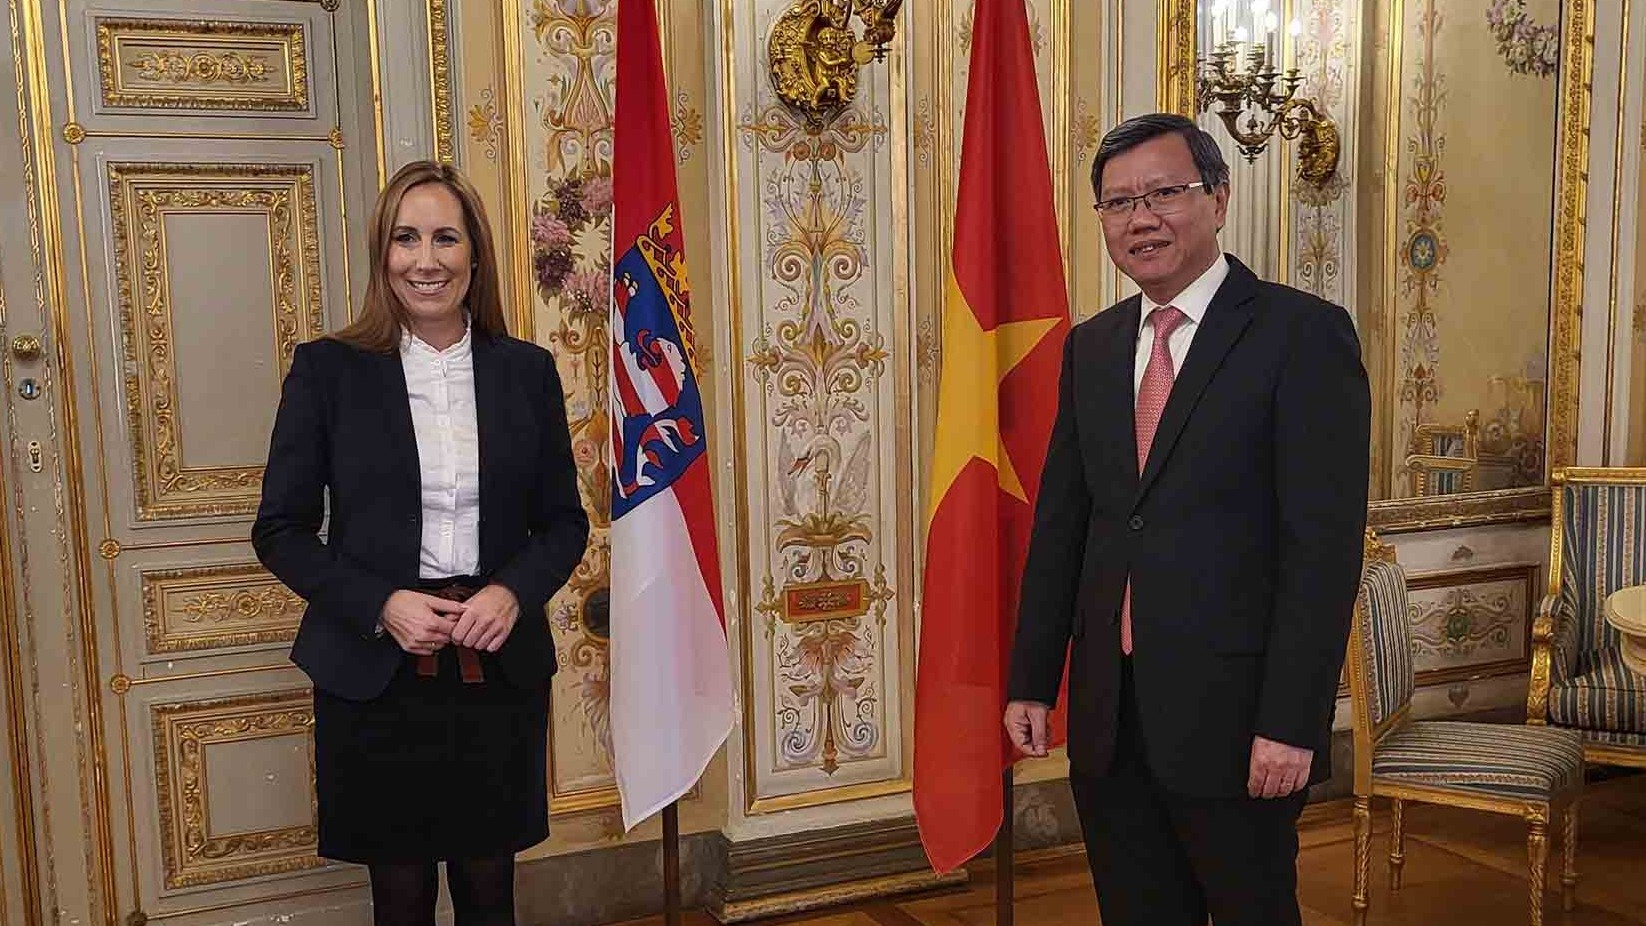 Thúc đẩy quan hệ hợp tác giữa bang Hessen và Việt Nam